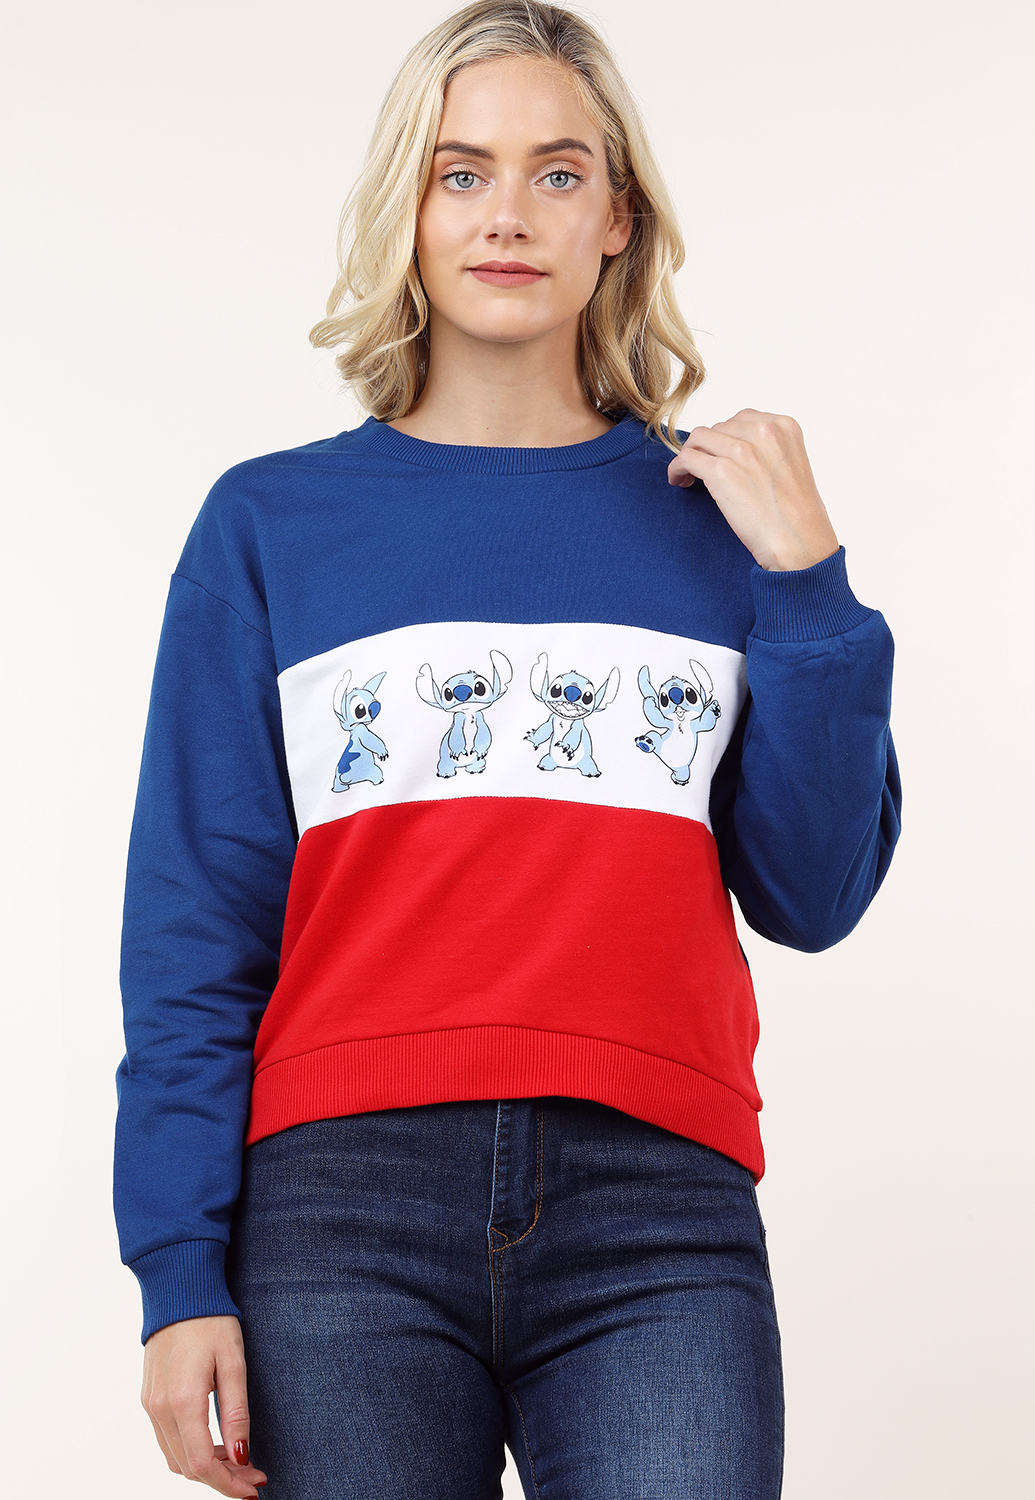 Stitch Graphic Sweatshirt